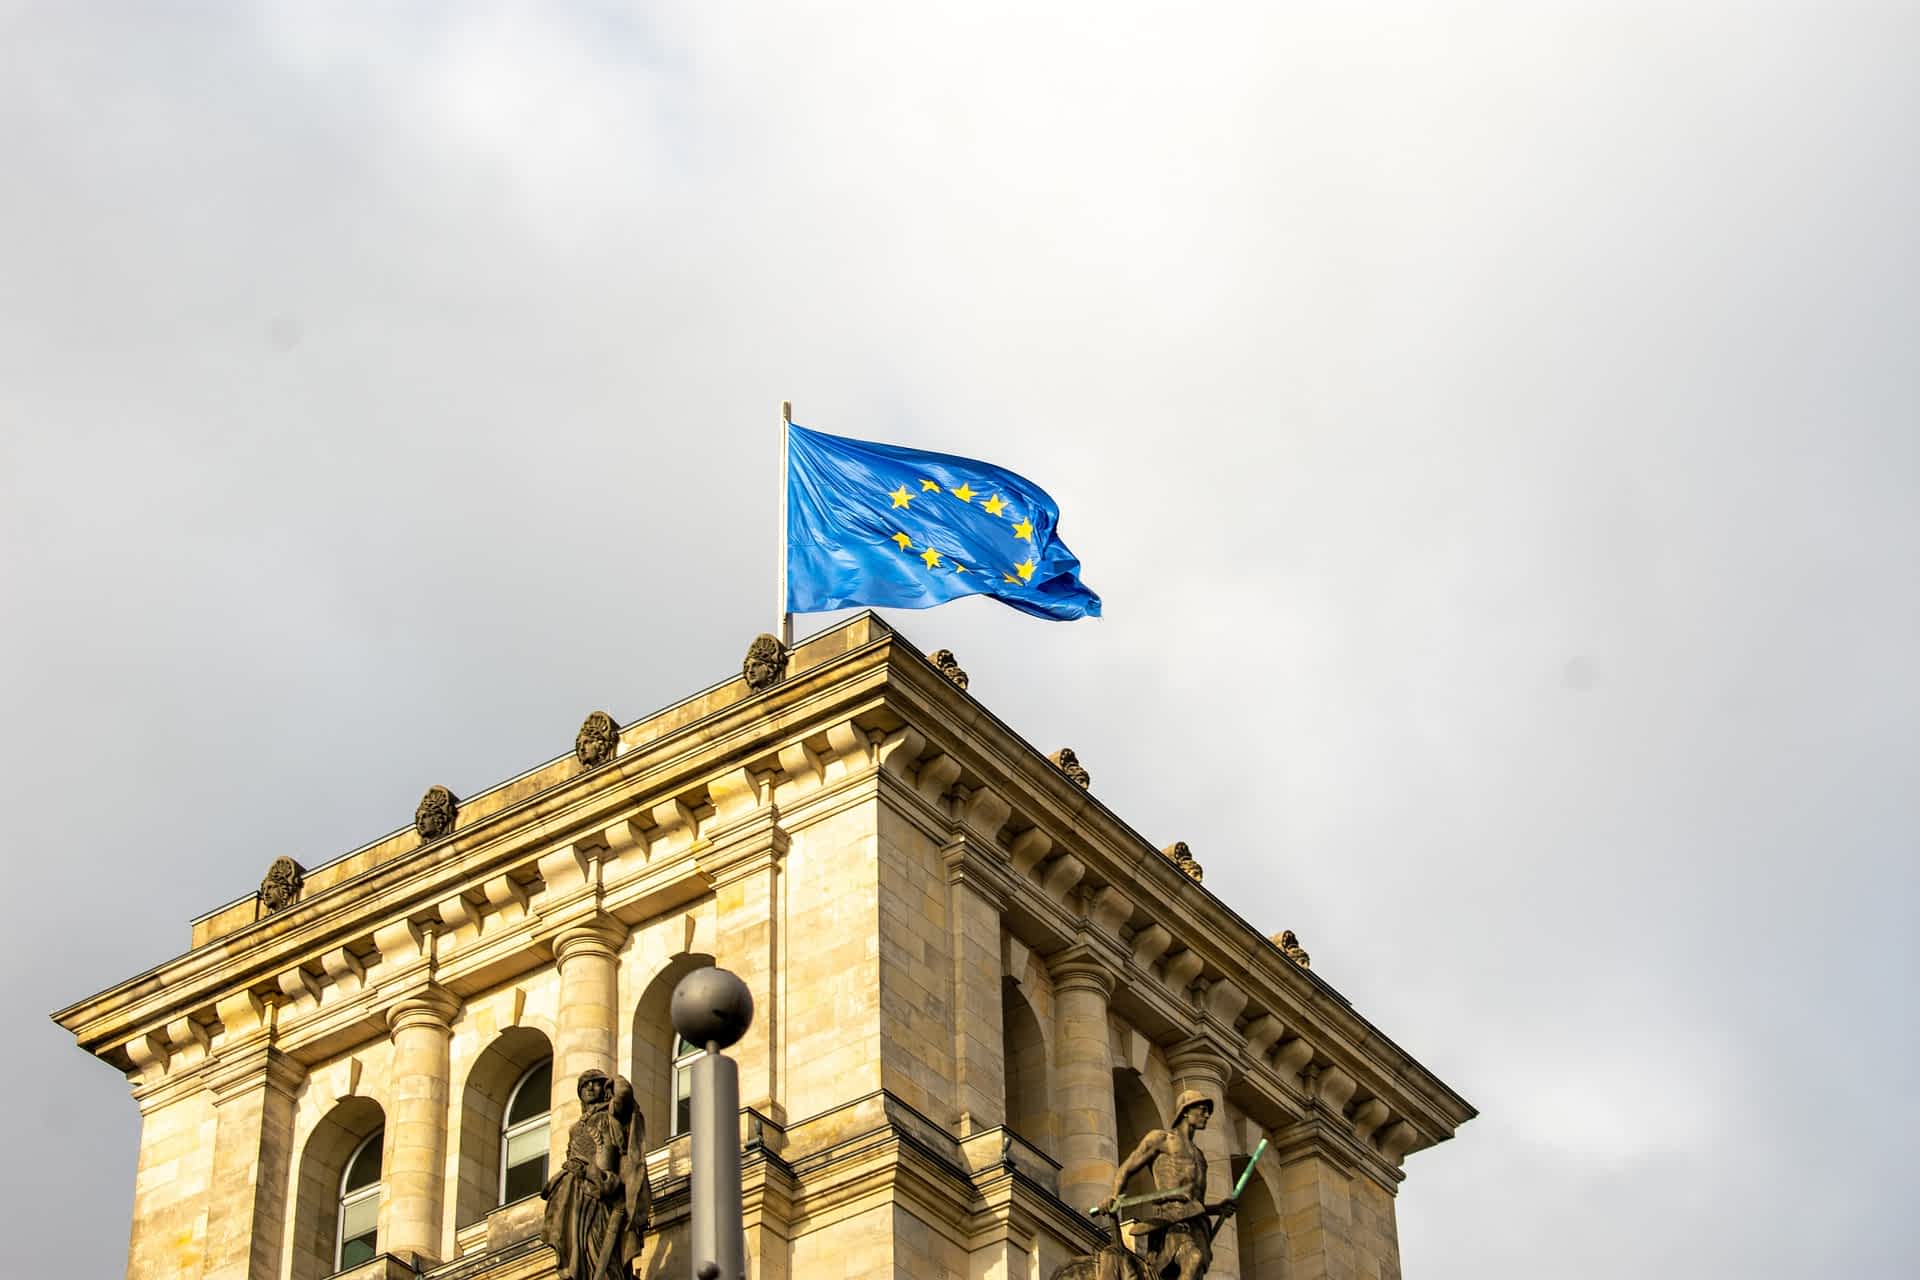 флаг евросоюза фото